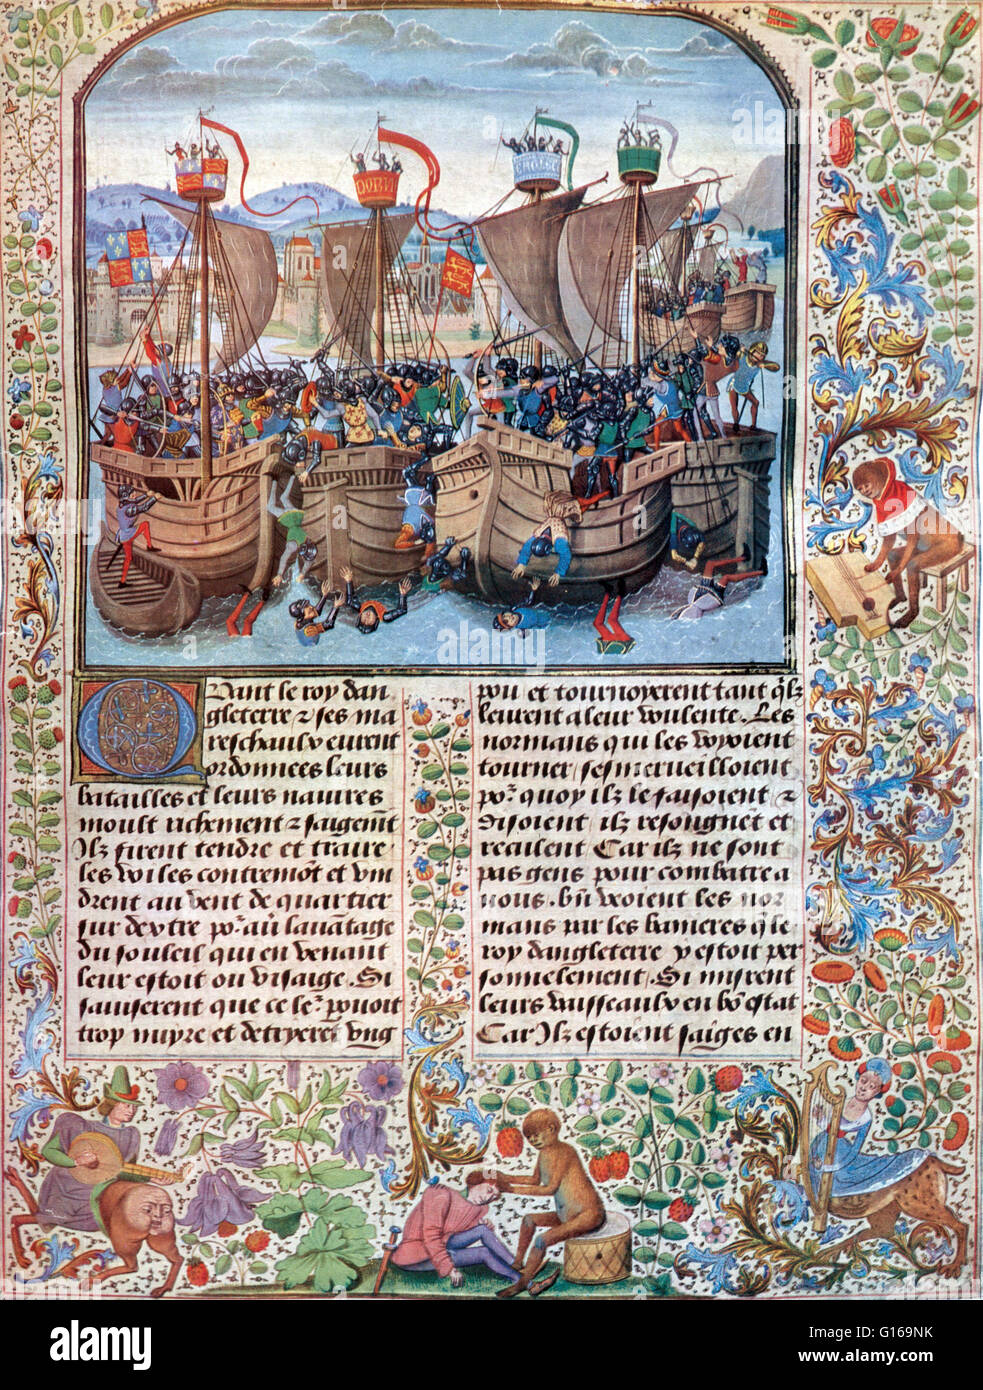 Miniatura della battaglia di Jean Froissart di cronache del XV secolo. La battaglia di Sluys è stata combattuta il 24 giugno 1340 come uno dei conflitti di apertura dei cento anni di guerra. Philippe la marina fu distrutto, dando la flotta inglese completa padronanza uovere Foto Stock